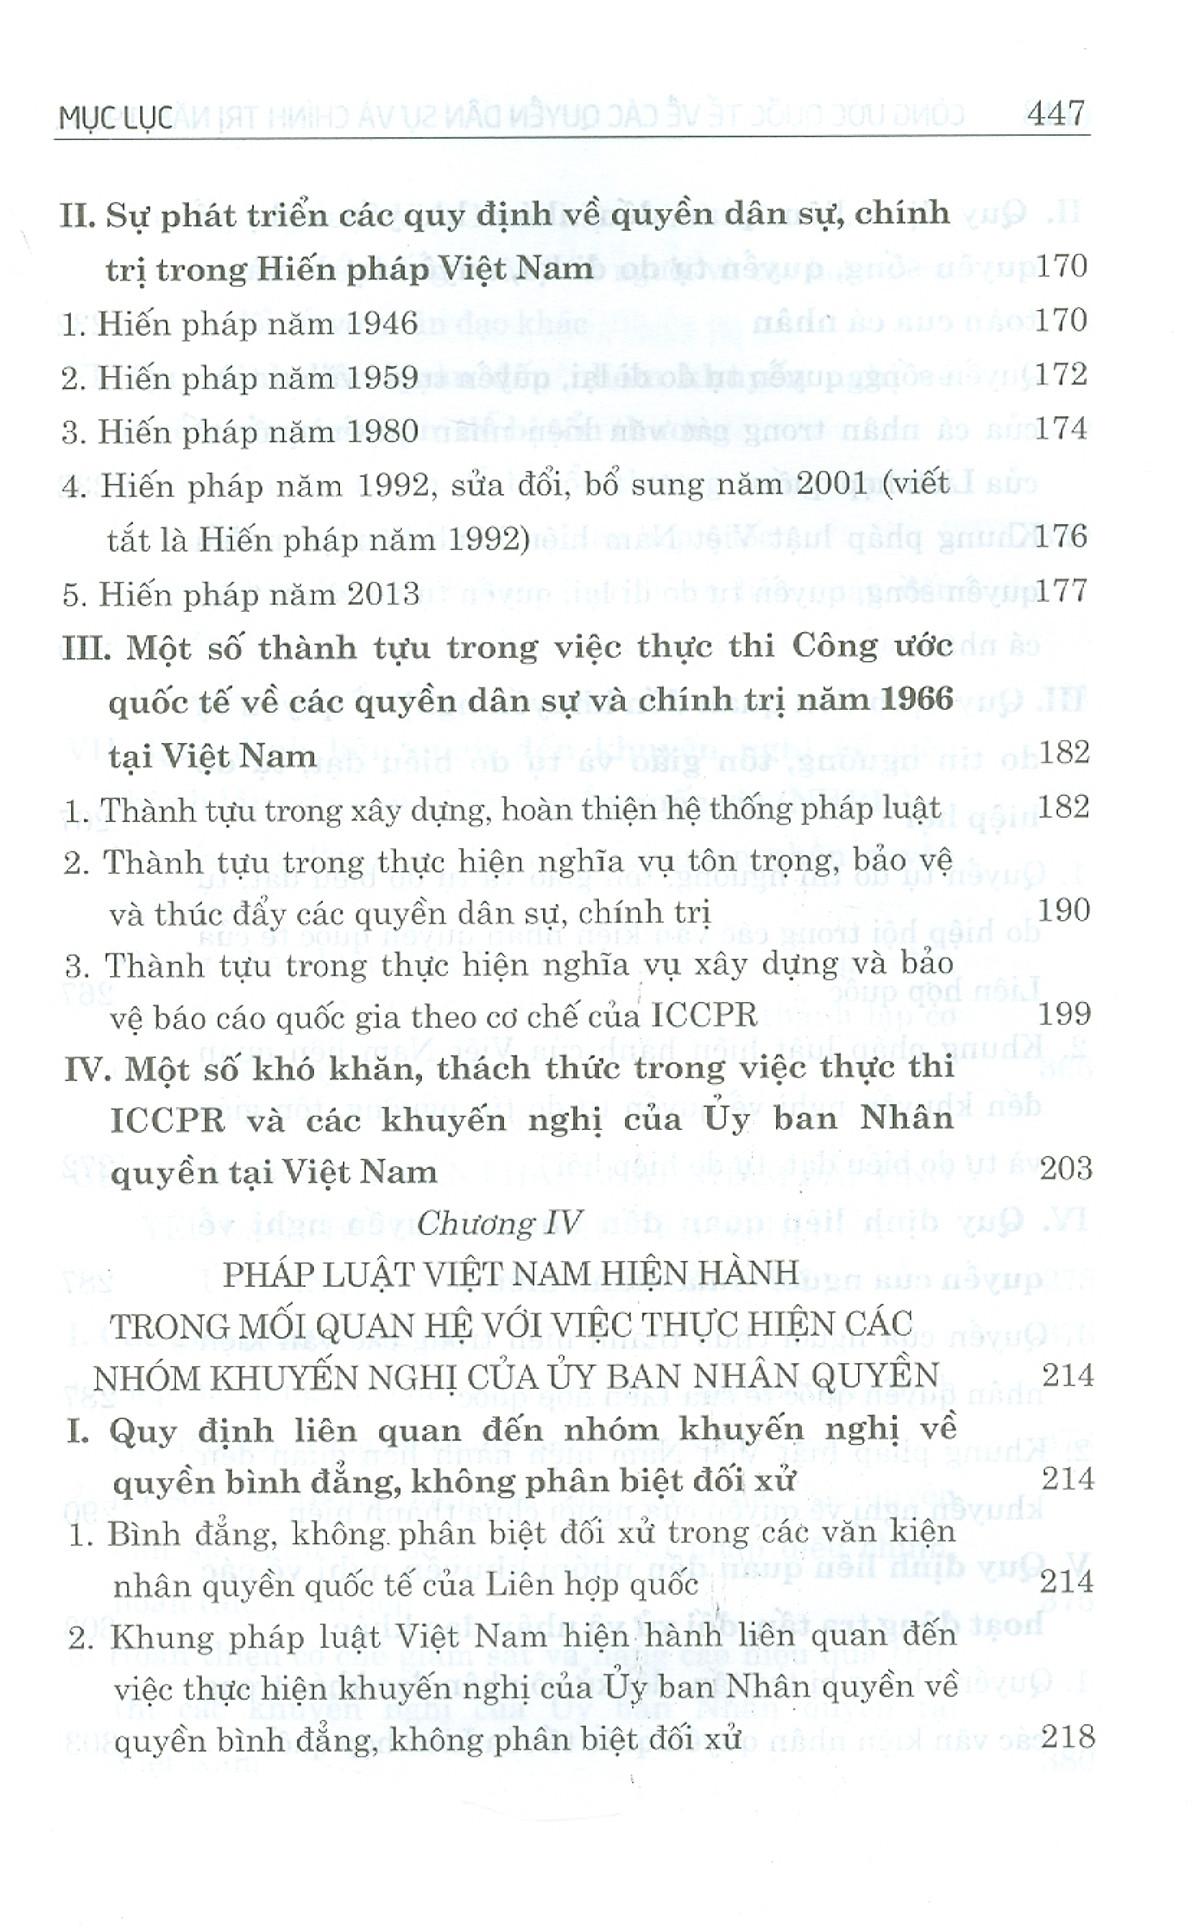 Công Ước Quốc Tế Về Các Quyền Dân Sự Và Chính Trị Năm 1966 Và Việc Thực Thi Các Khuyến Nghị Của Ủy Ban Nhân Quyền Tại Việt Nam